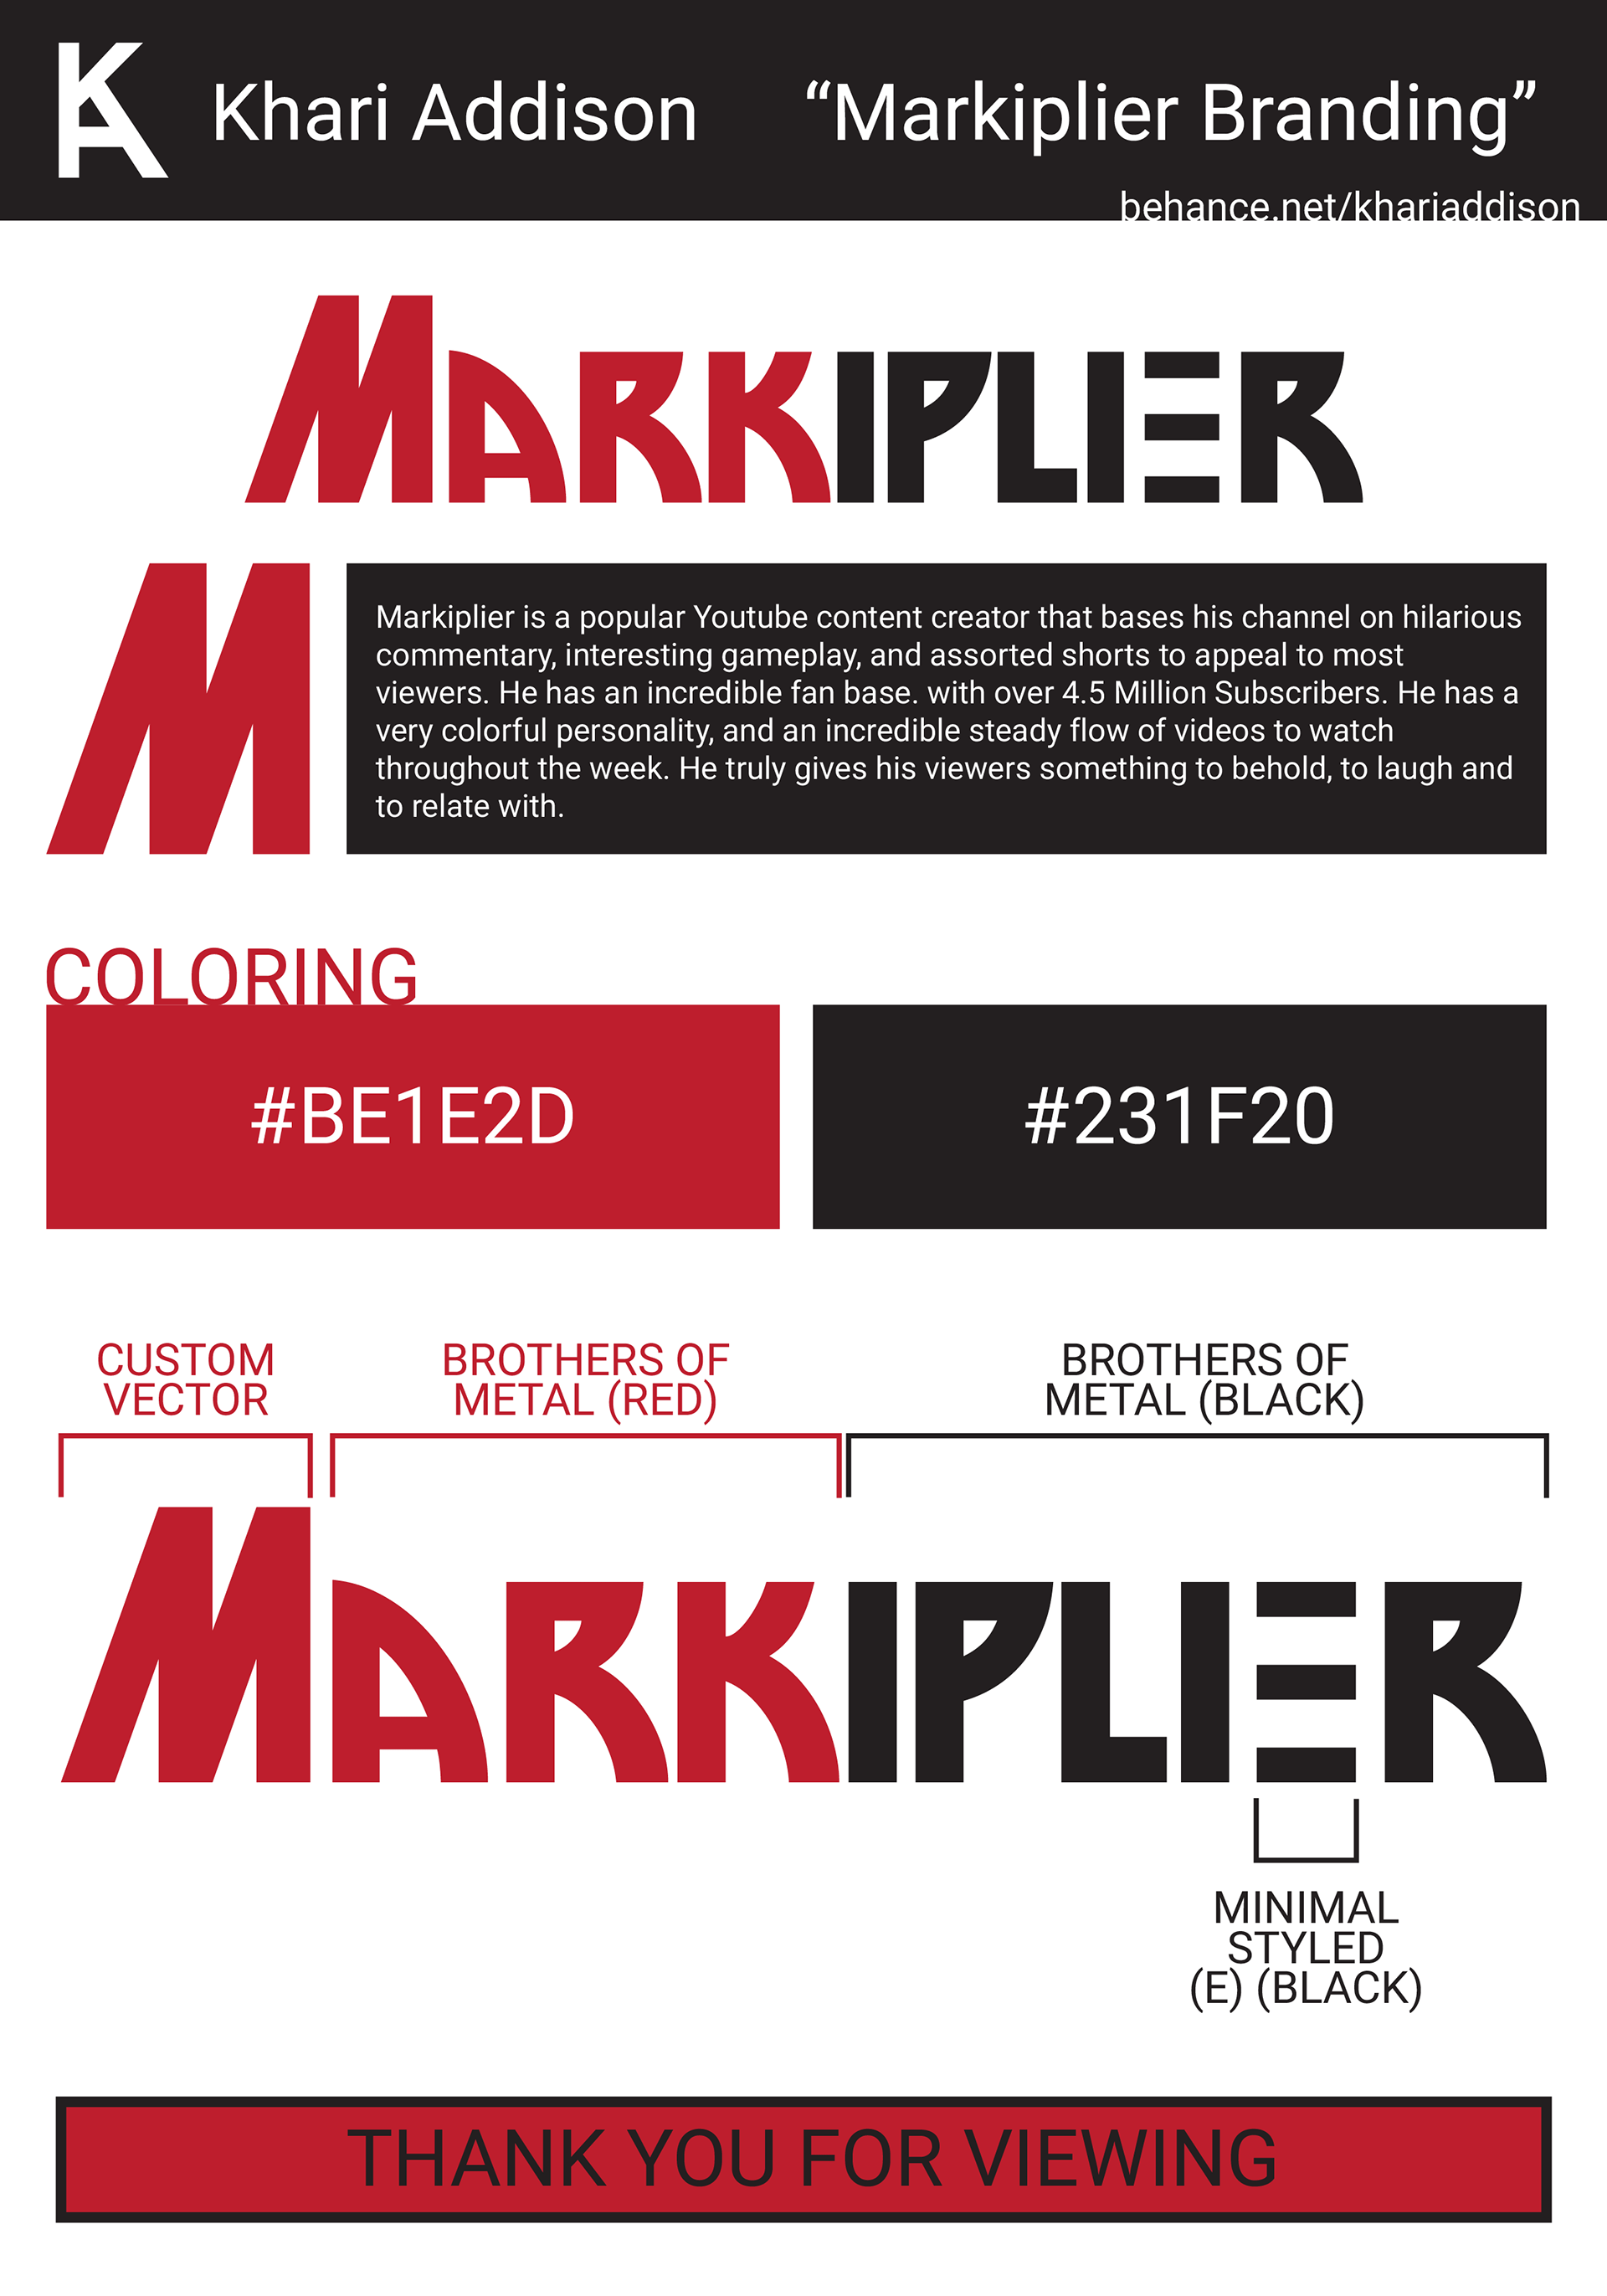 Markiplier Red and Black Logo - Khari Addison - Markiplier Branding